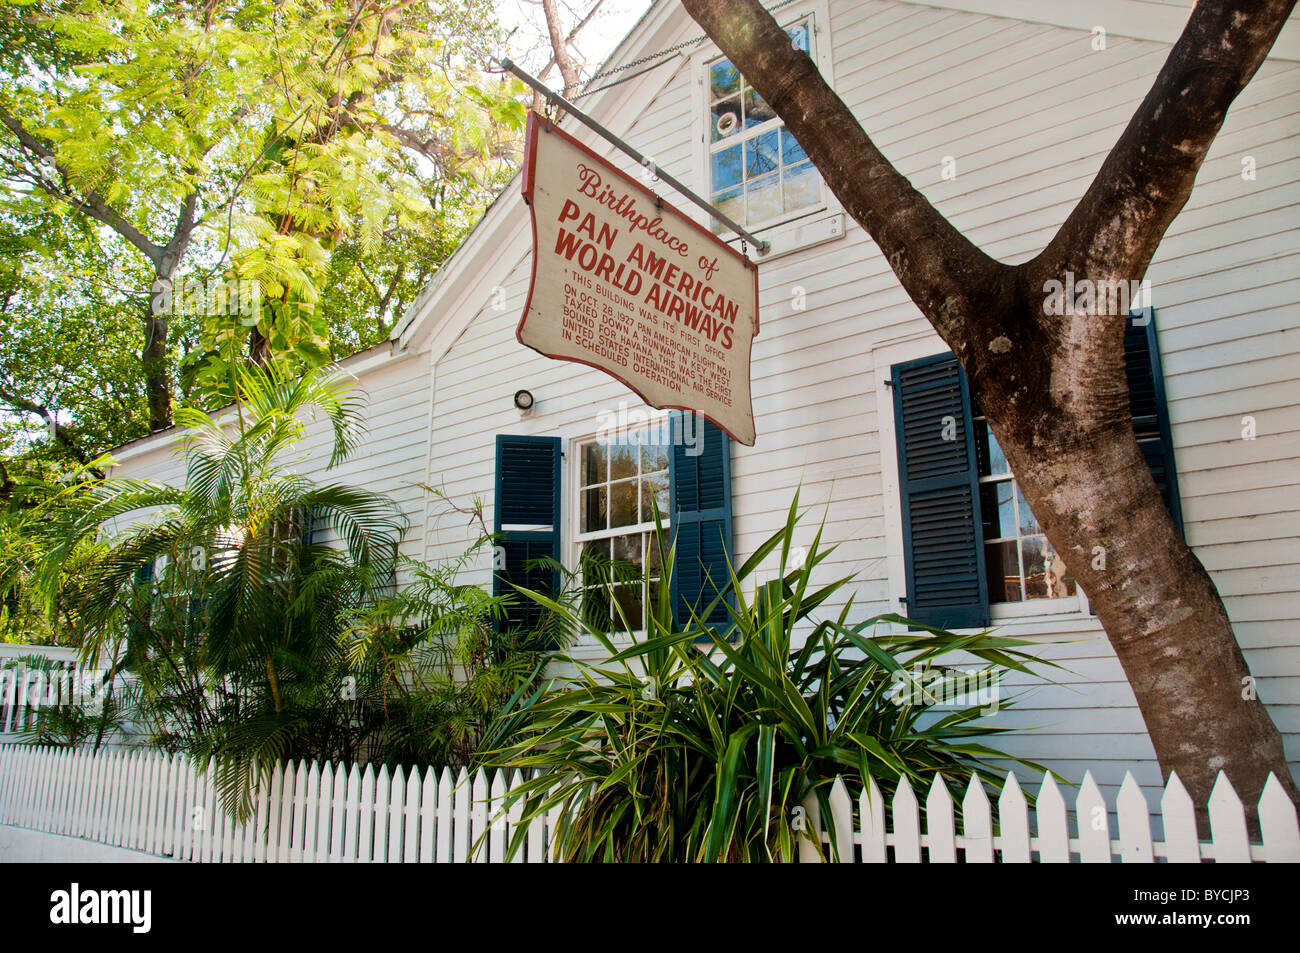 La maison d'origine à Pan Am Airlines à Key West en Floride est maintenant le Kelly's Bar & Restaurant, a commencé par l'actrice Kelly McGillis Banque D'Images